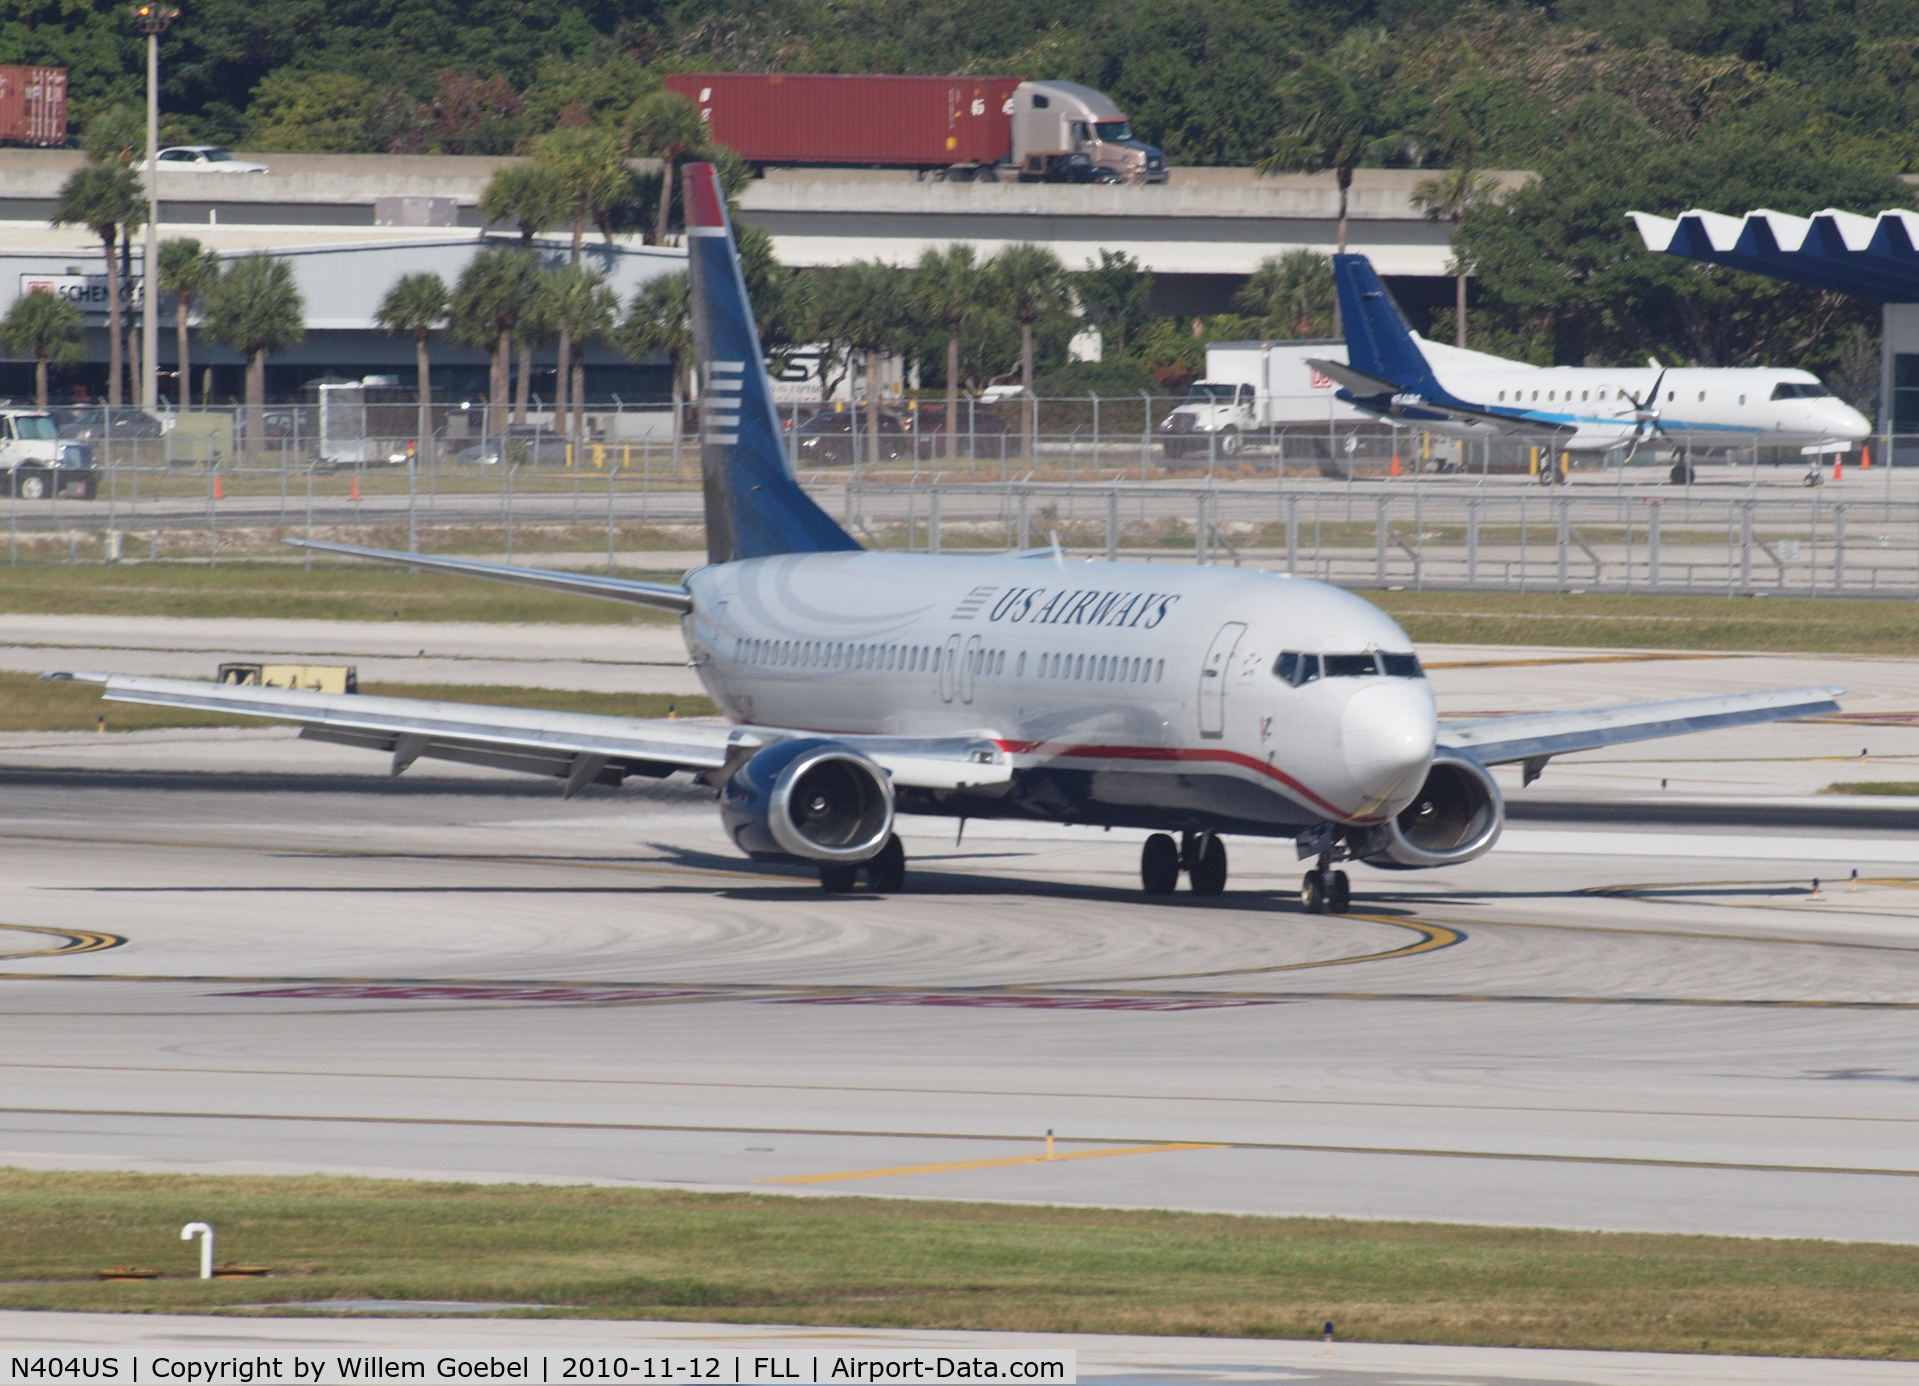 N404US, 1989 Boeing 737-401 C/N 23886, Arrival on Frt. Lauderdale Airport(FLL)